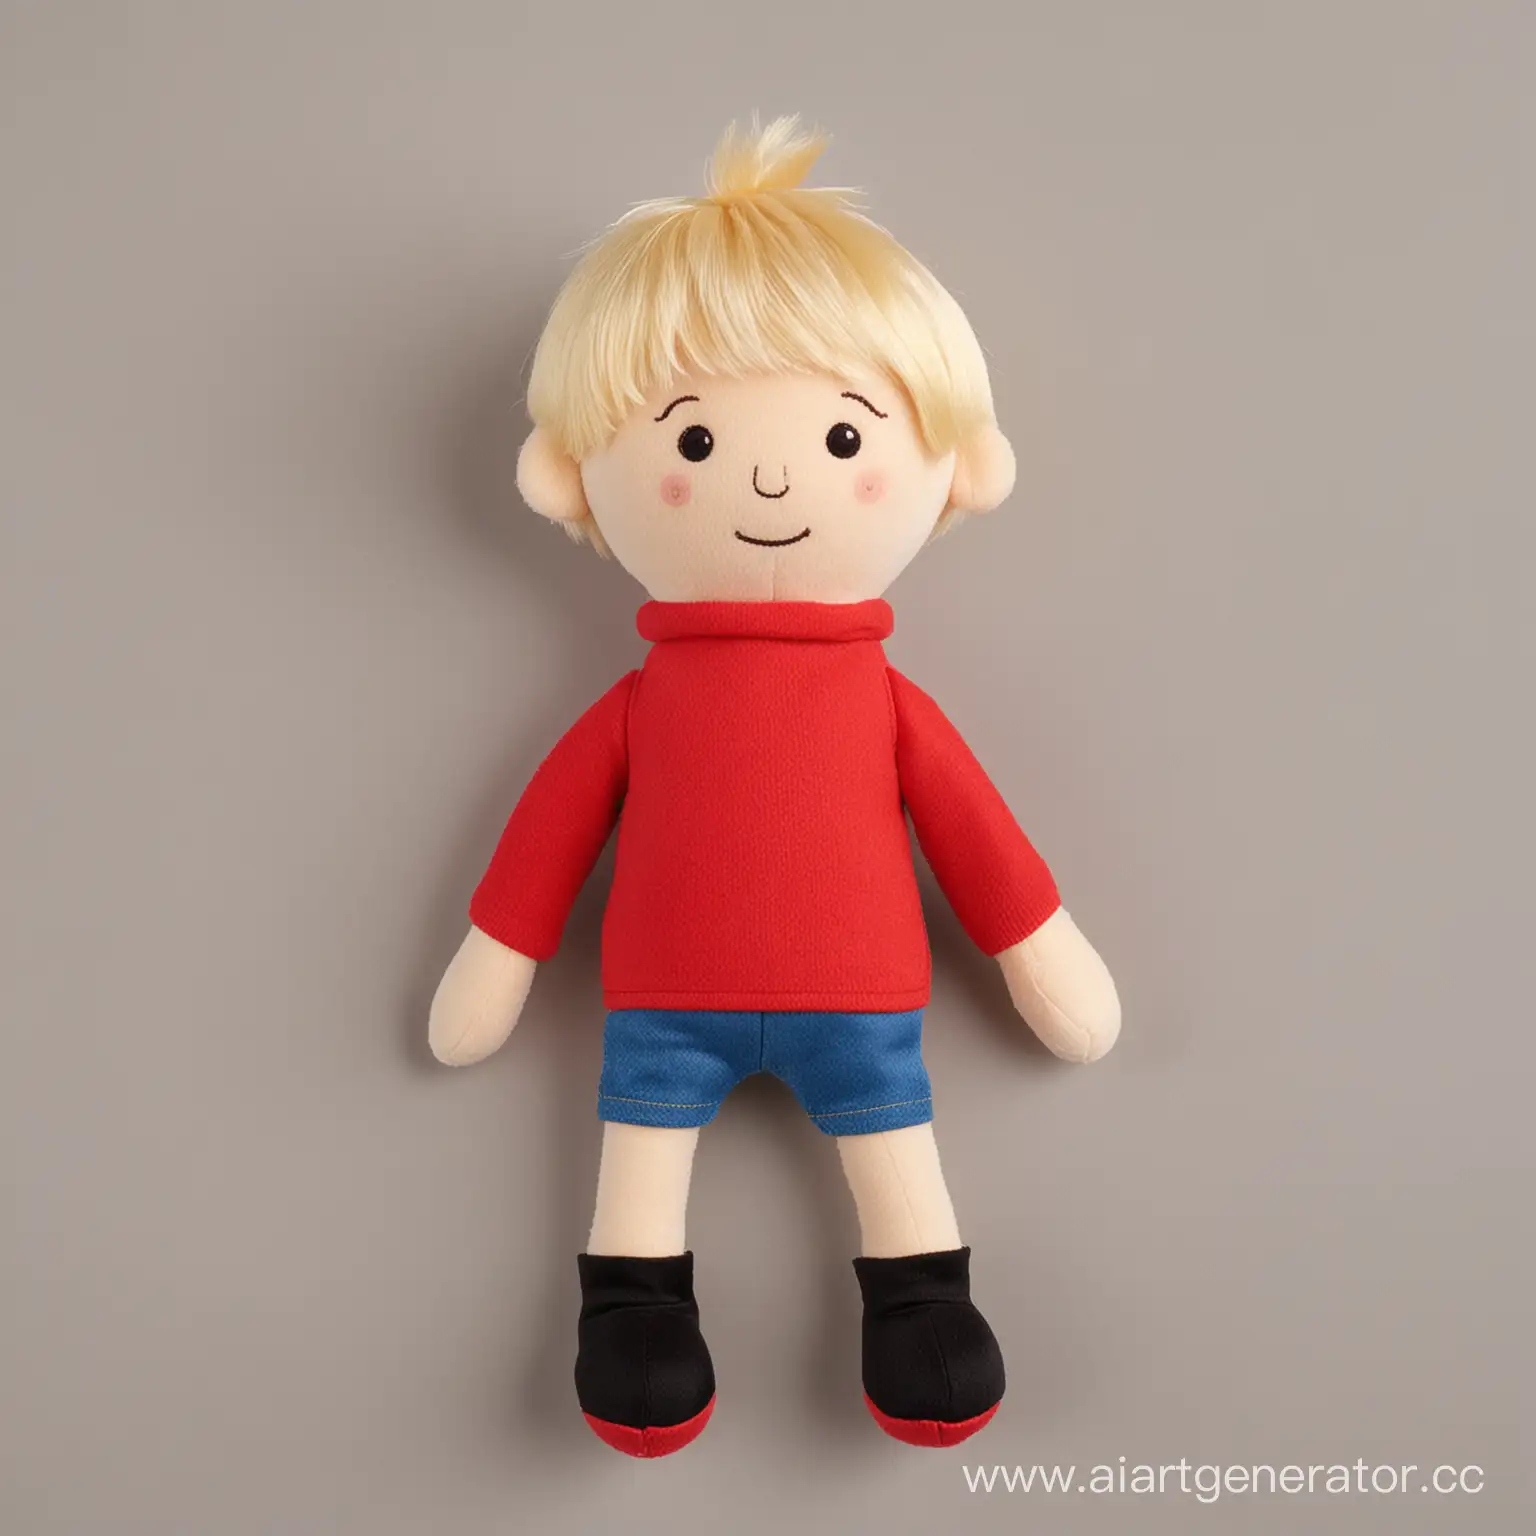 Фотография плюшевой игрушки мальчика блондина в красном